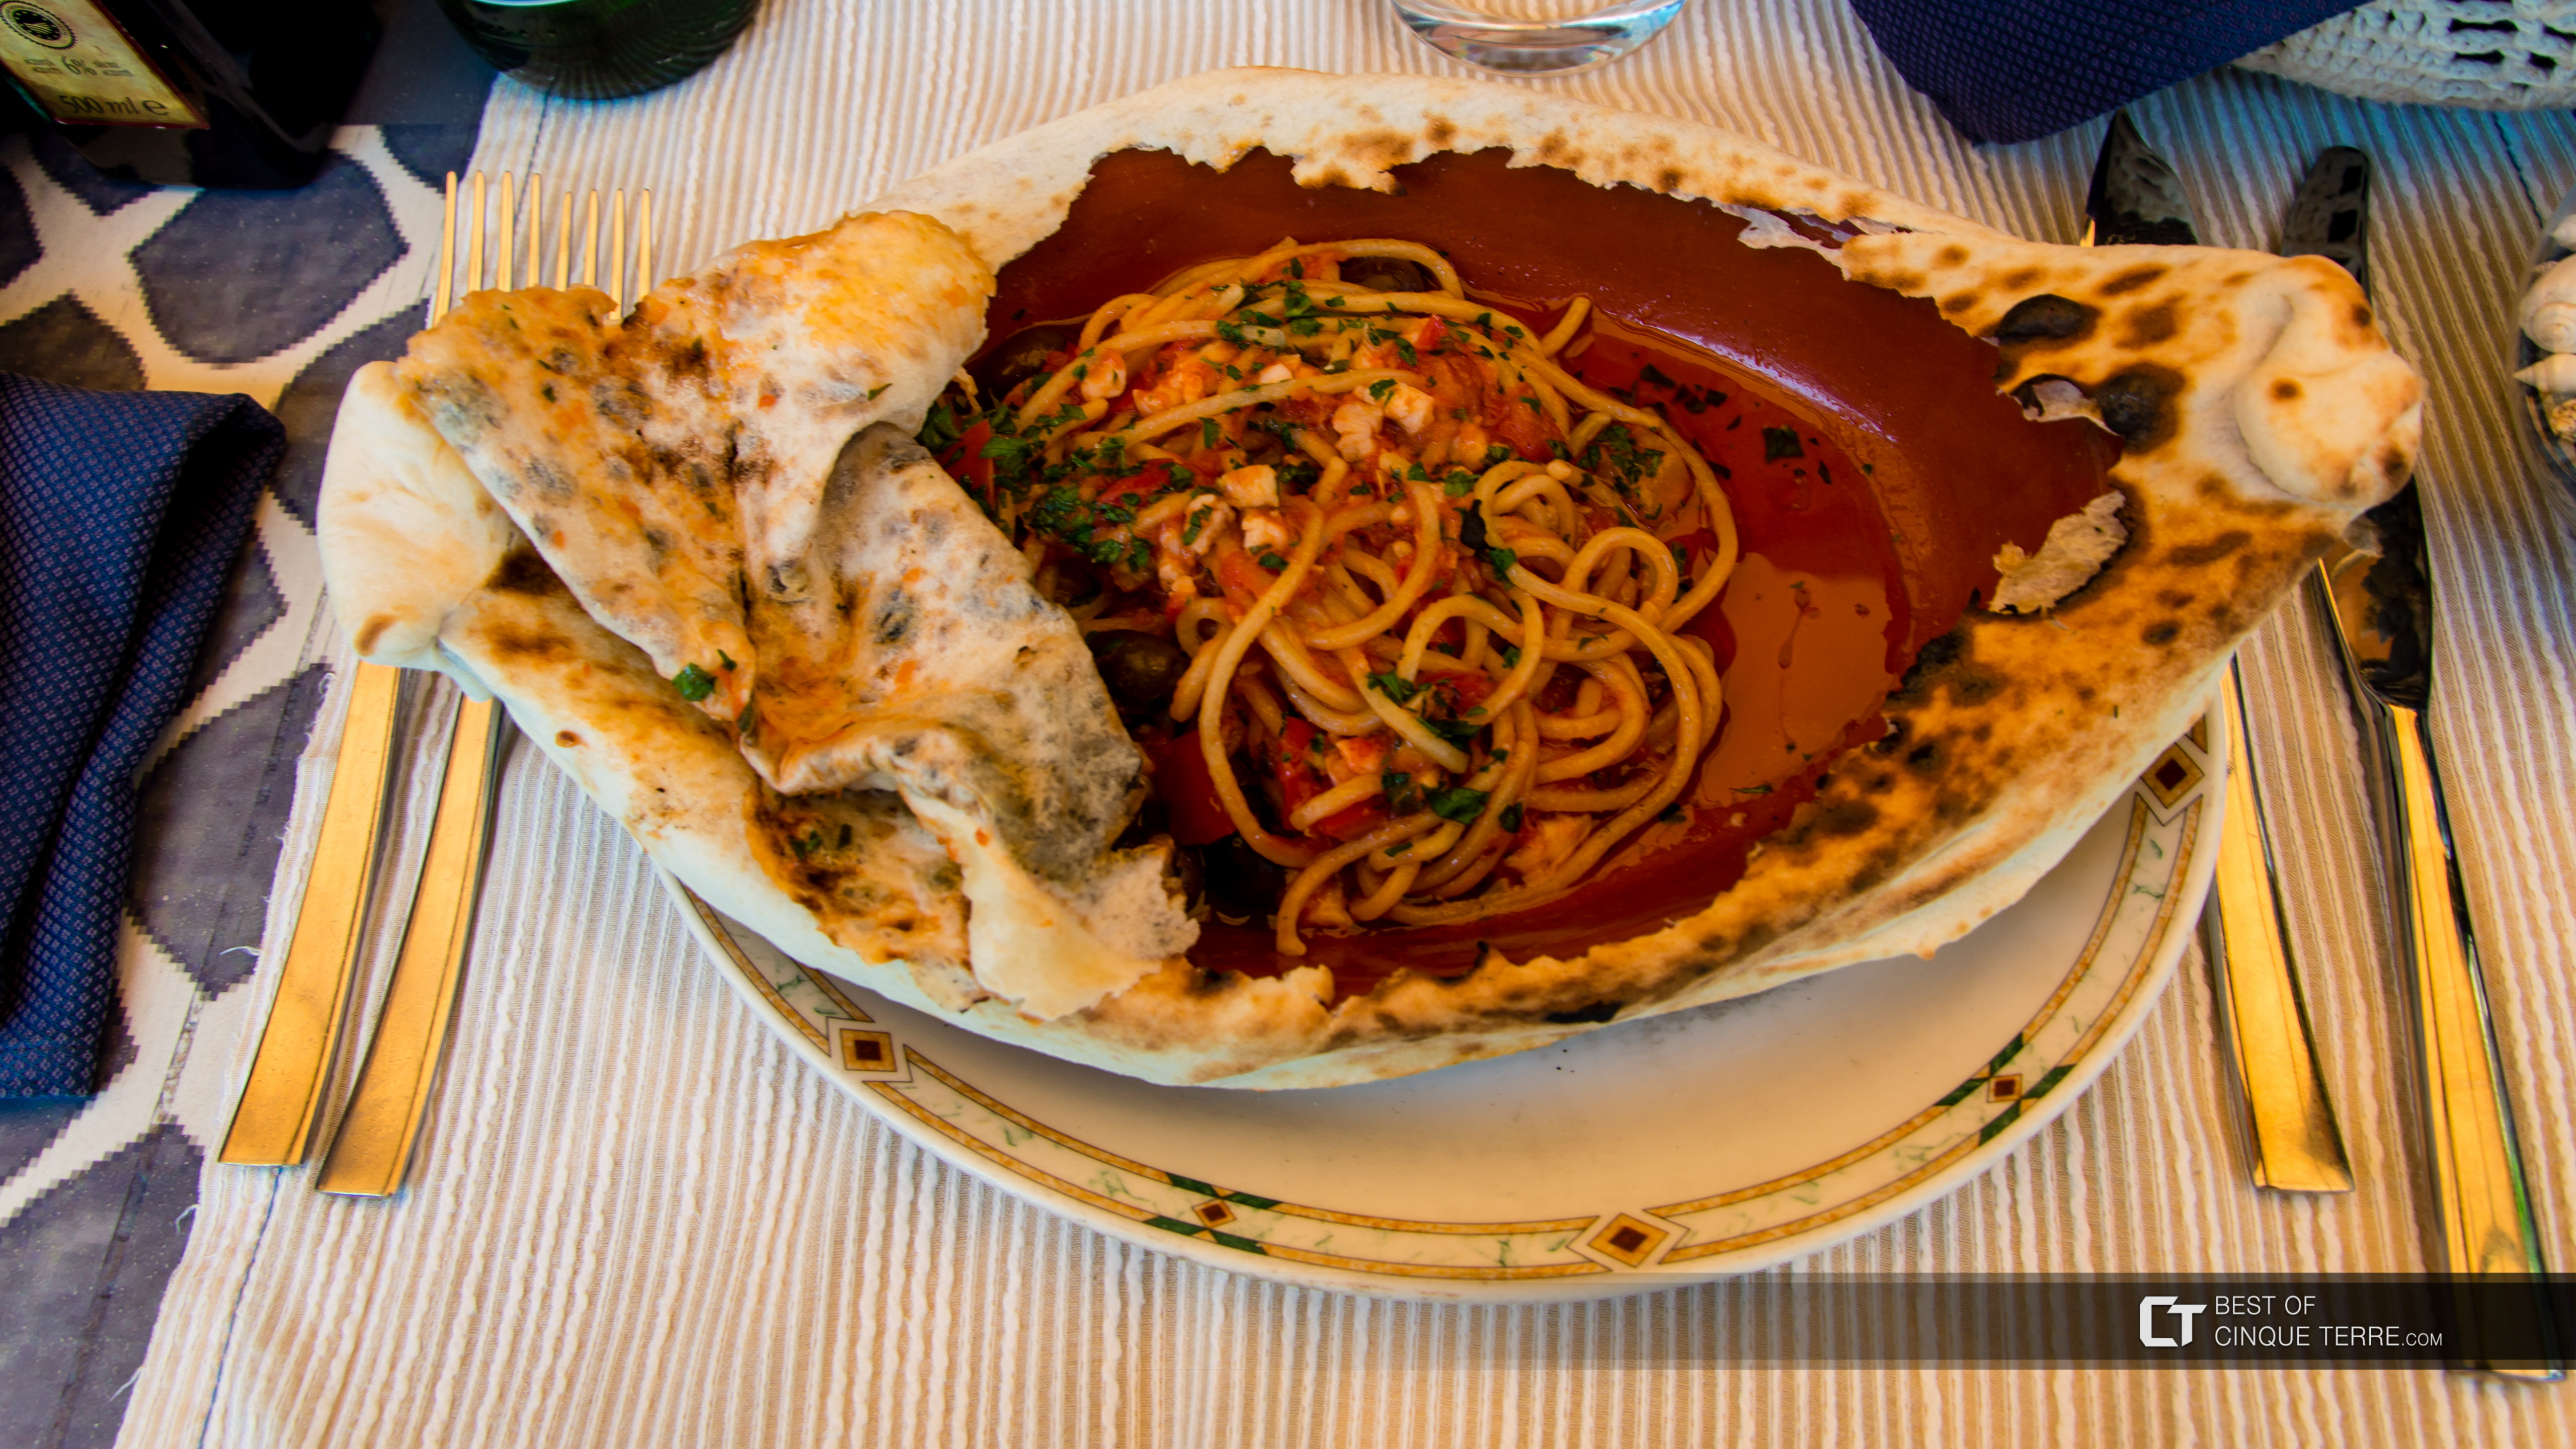 Спагетти алла китарра (ресторан Мики, Монтероссо-аль-Маре), Местная еда, Чинкве-Терре, Италия